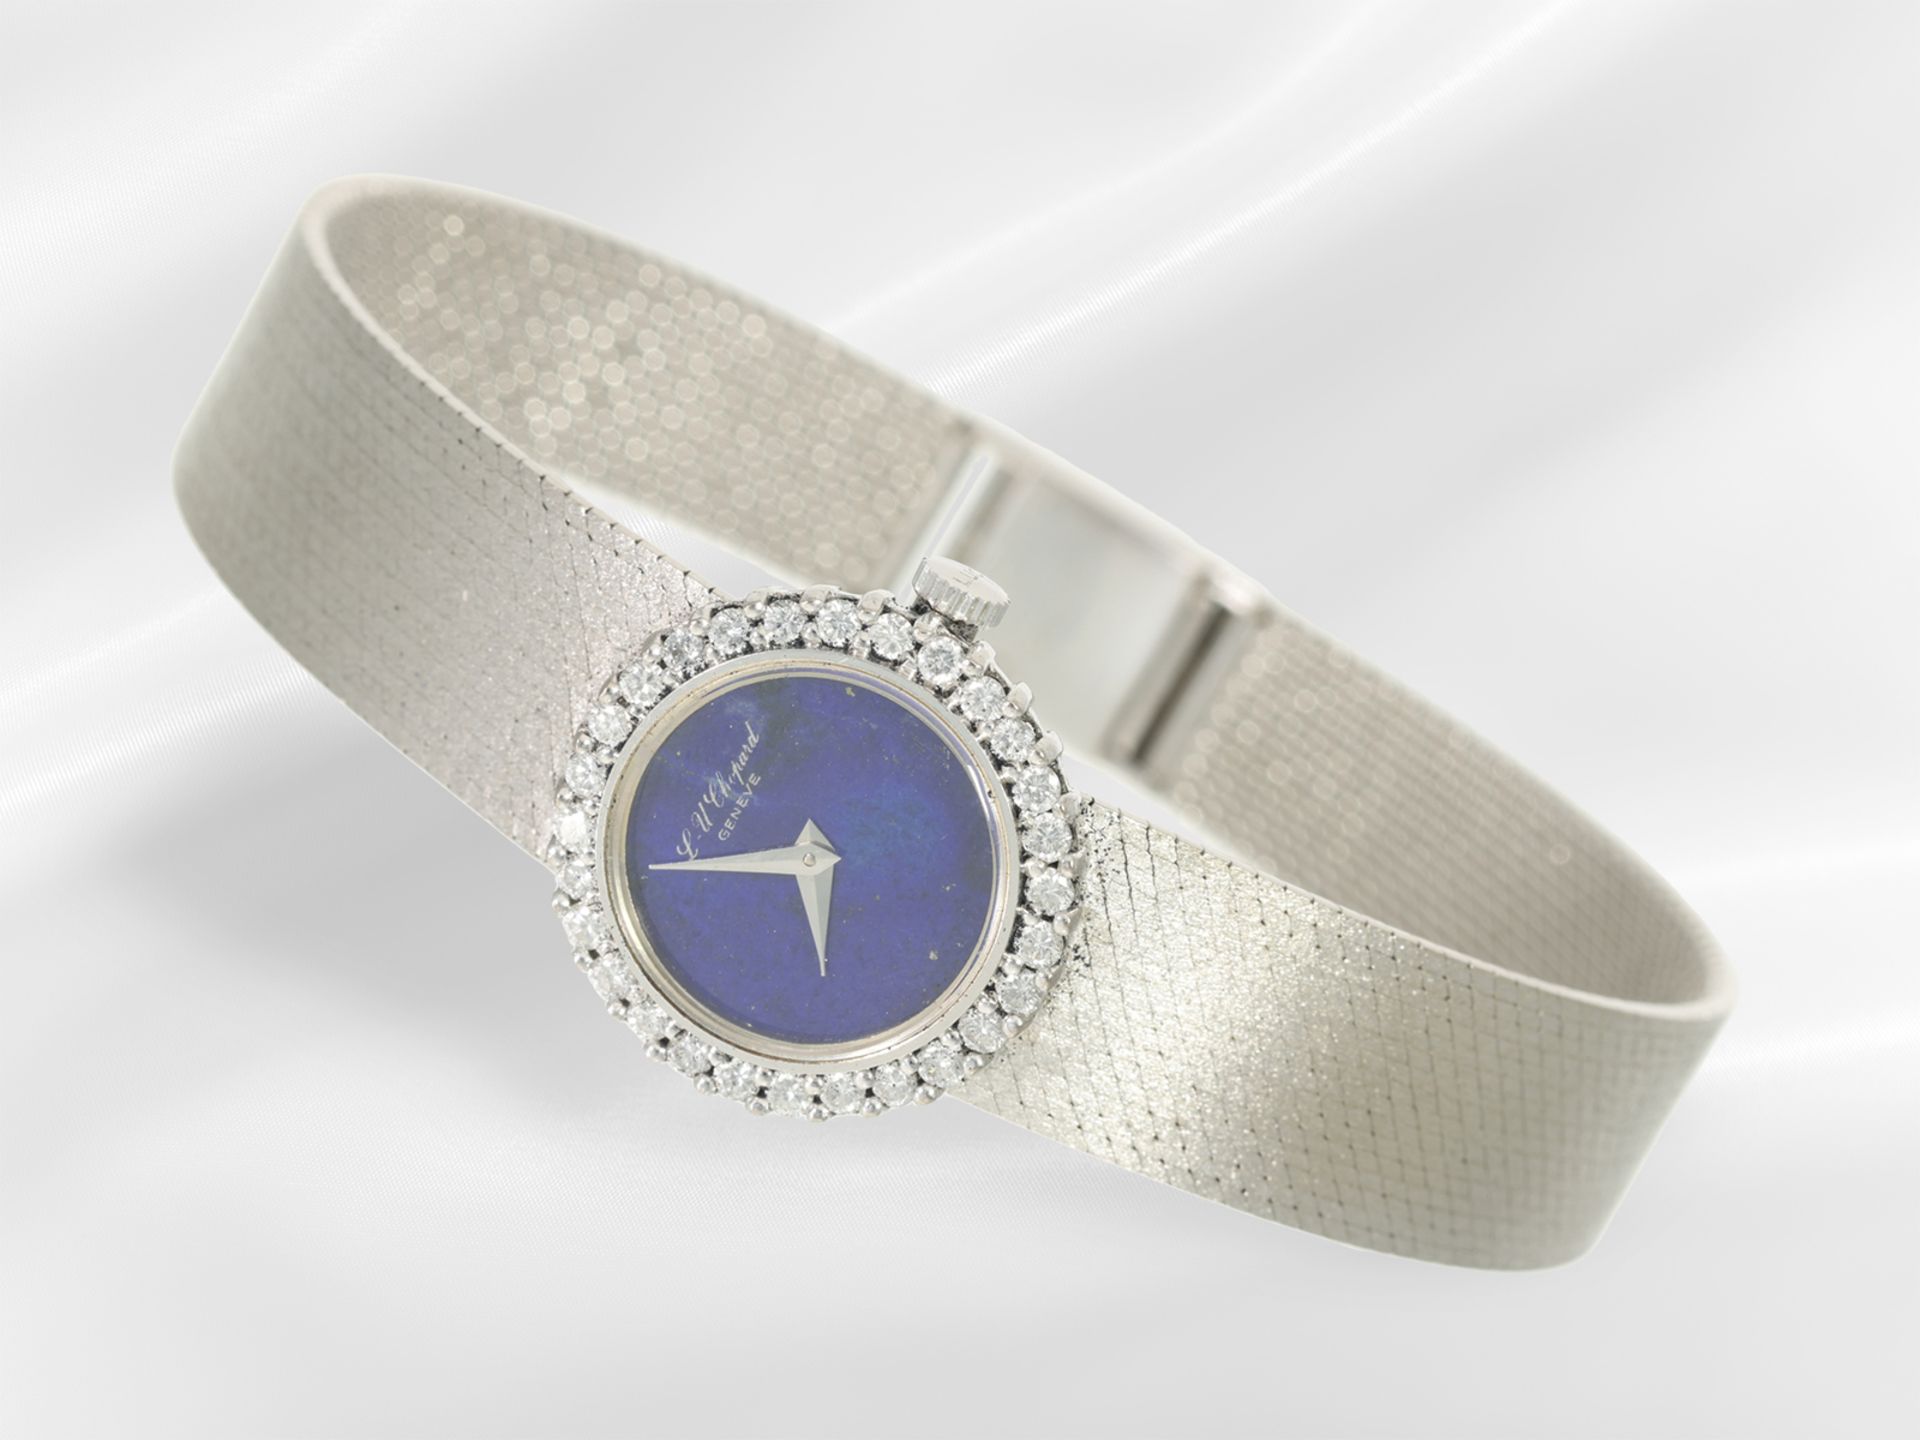 Armbanduhr: luxuriöse Damenuhr von Chopard mit Brillantlünette und Lapislazuli- Zifferblatt